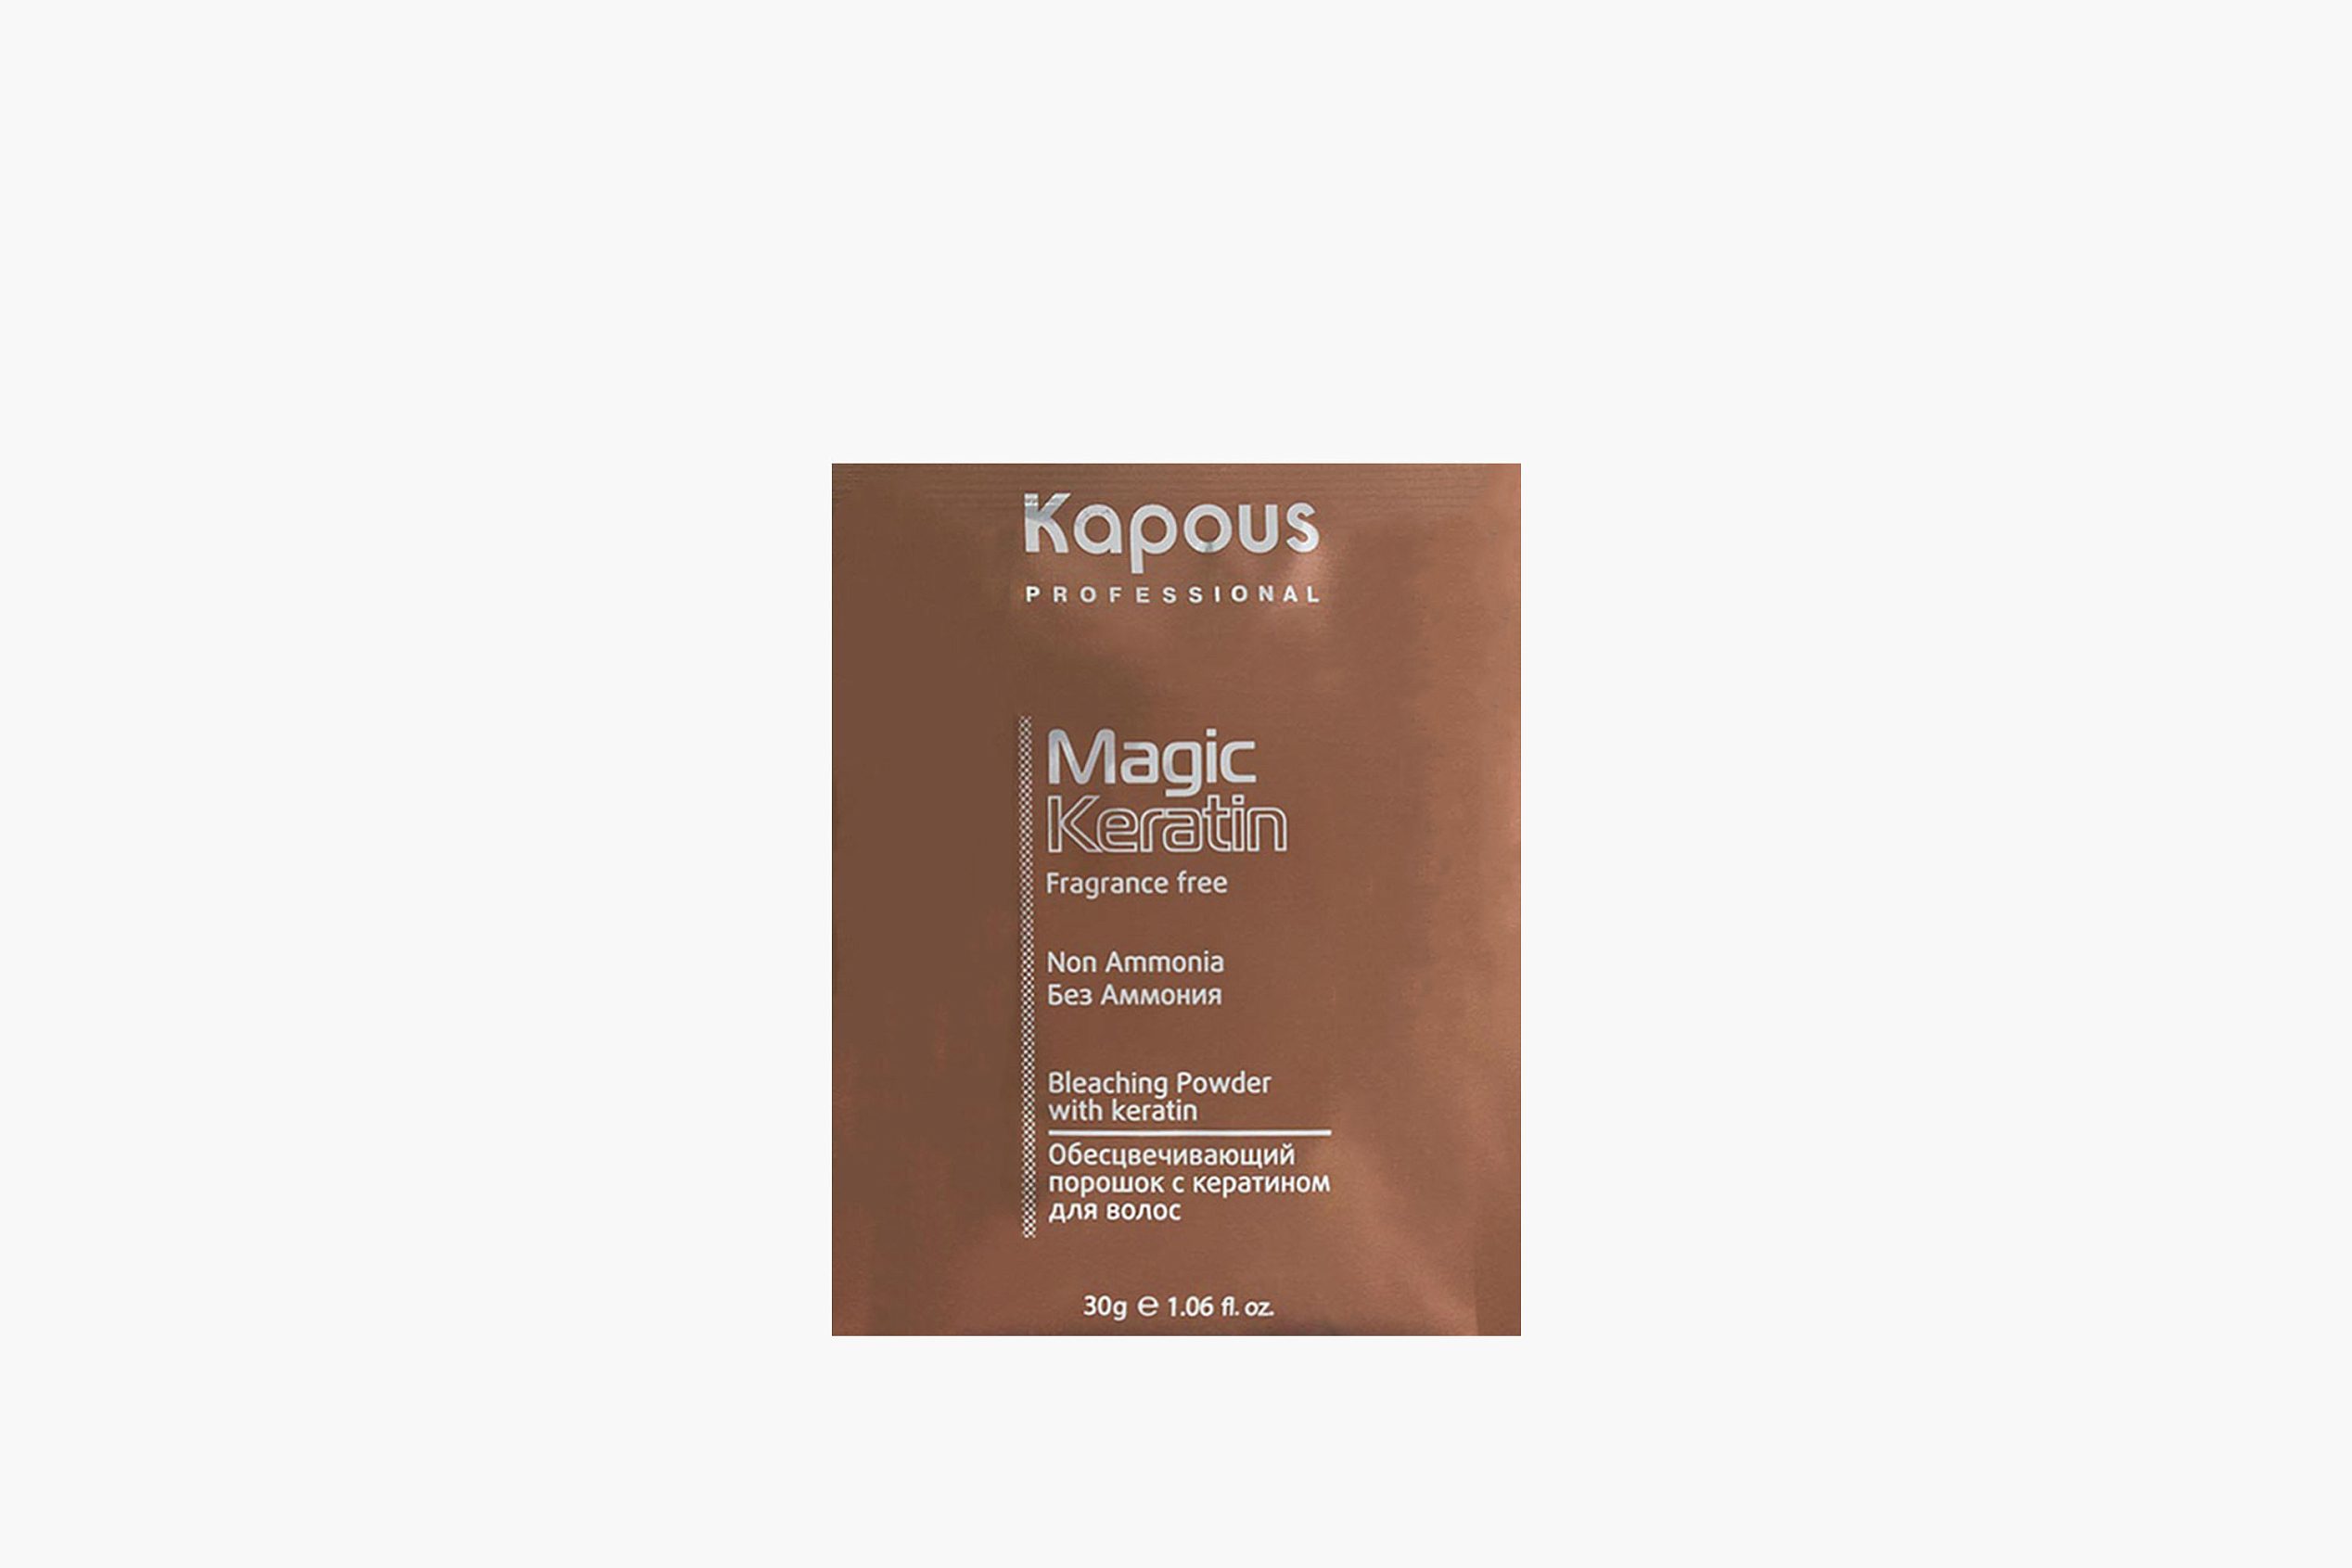 Kapous Professional Non Ammonia Magic Keratin фото 1